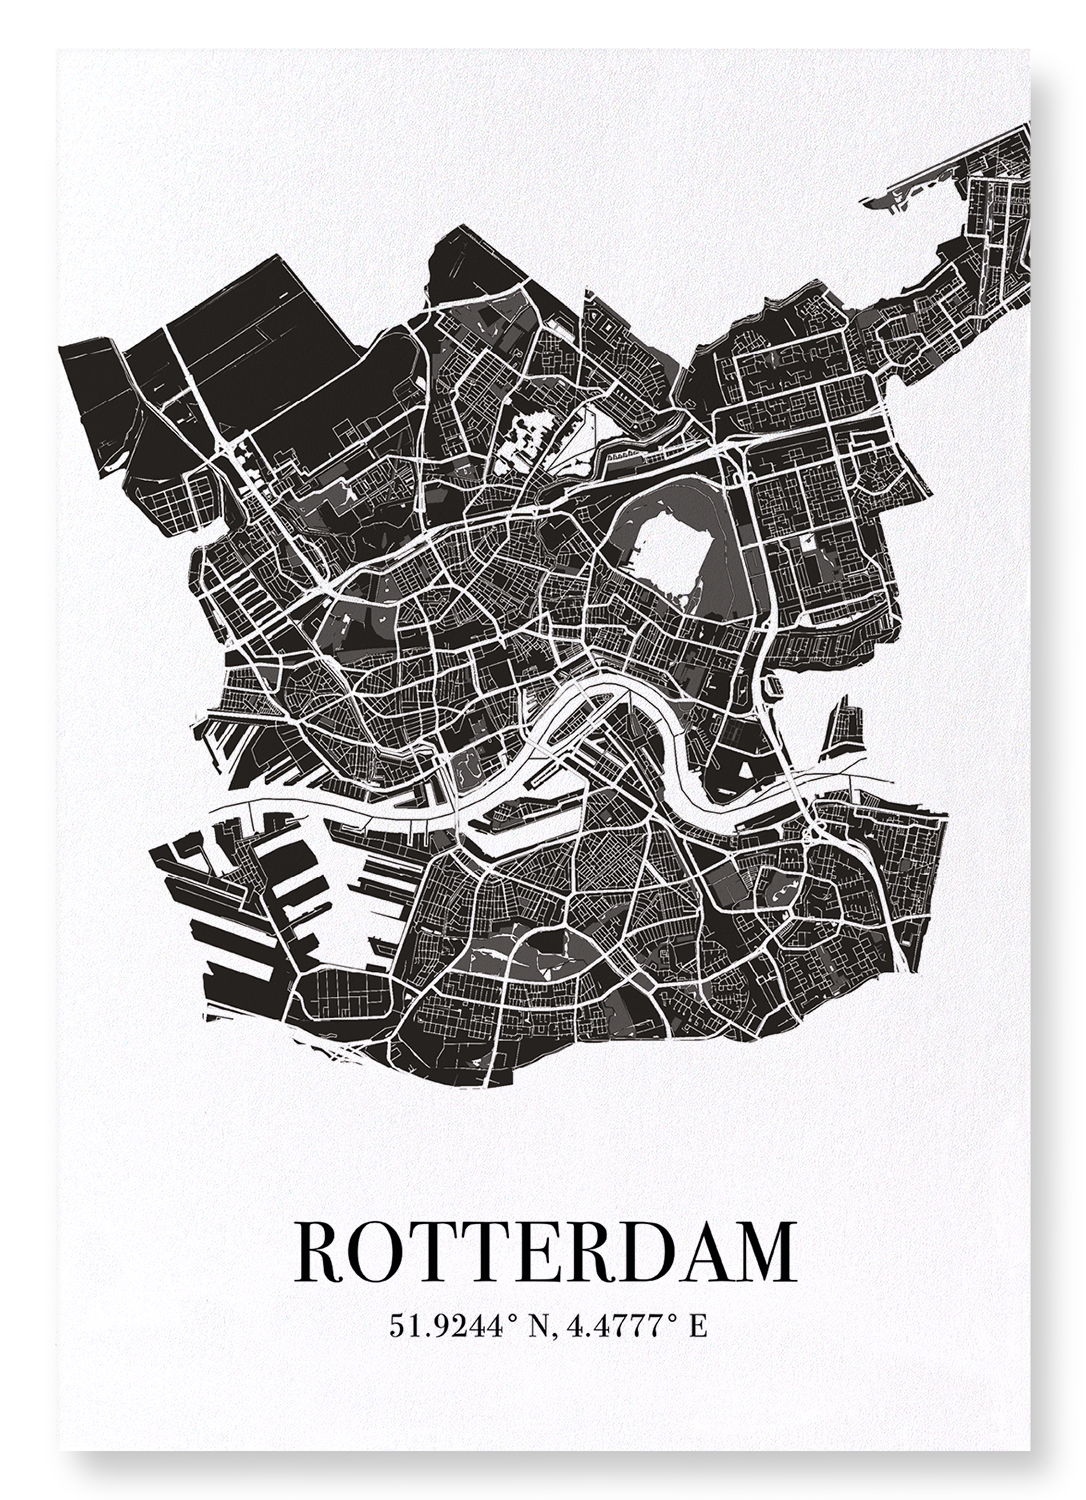 ROTTERDAM CUTOUT: Map Cutout Art Print